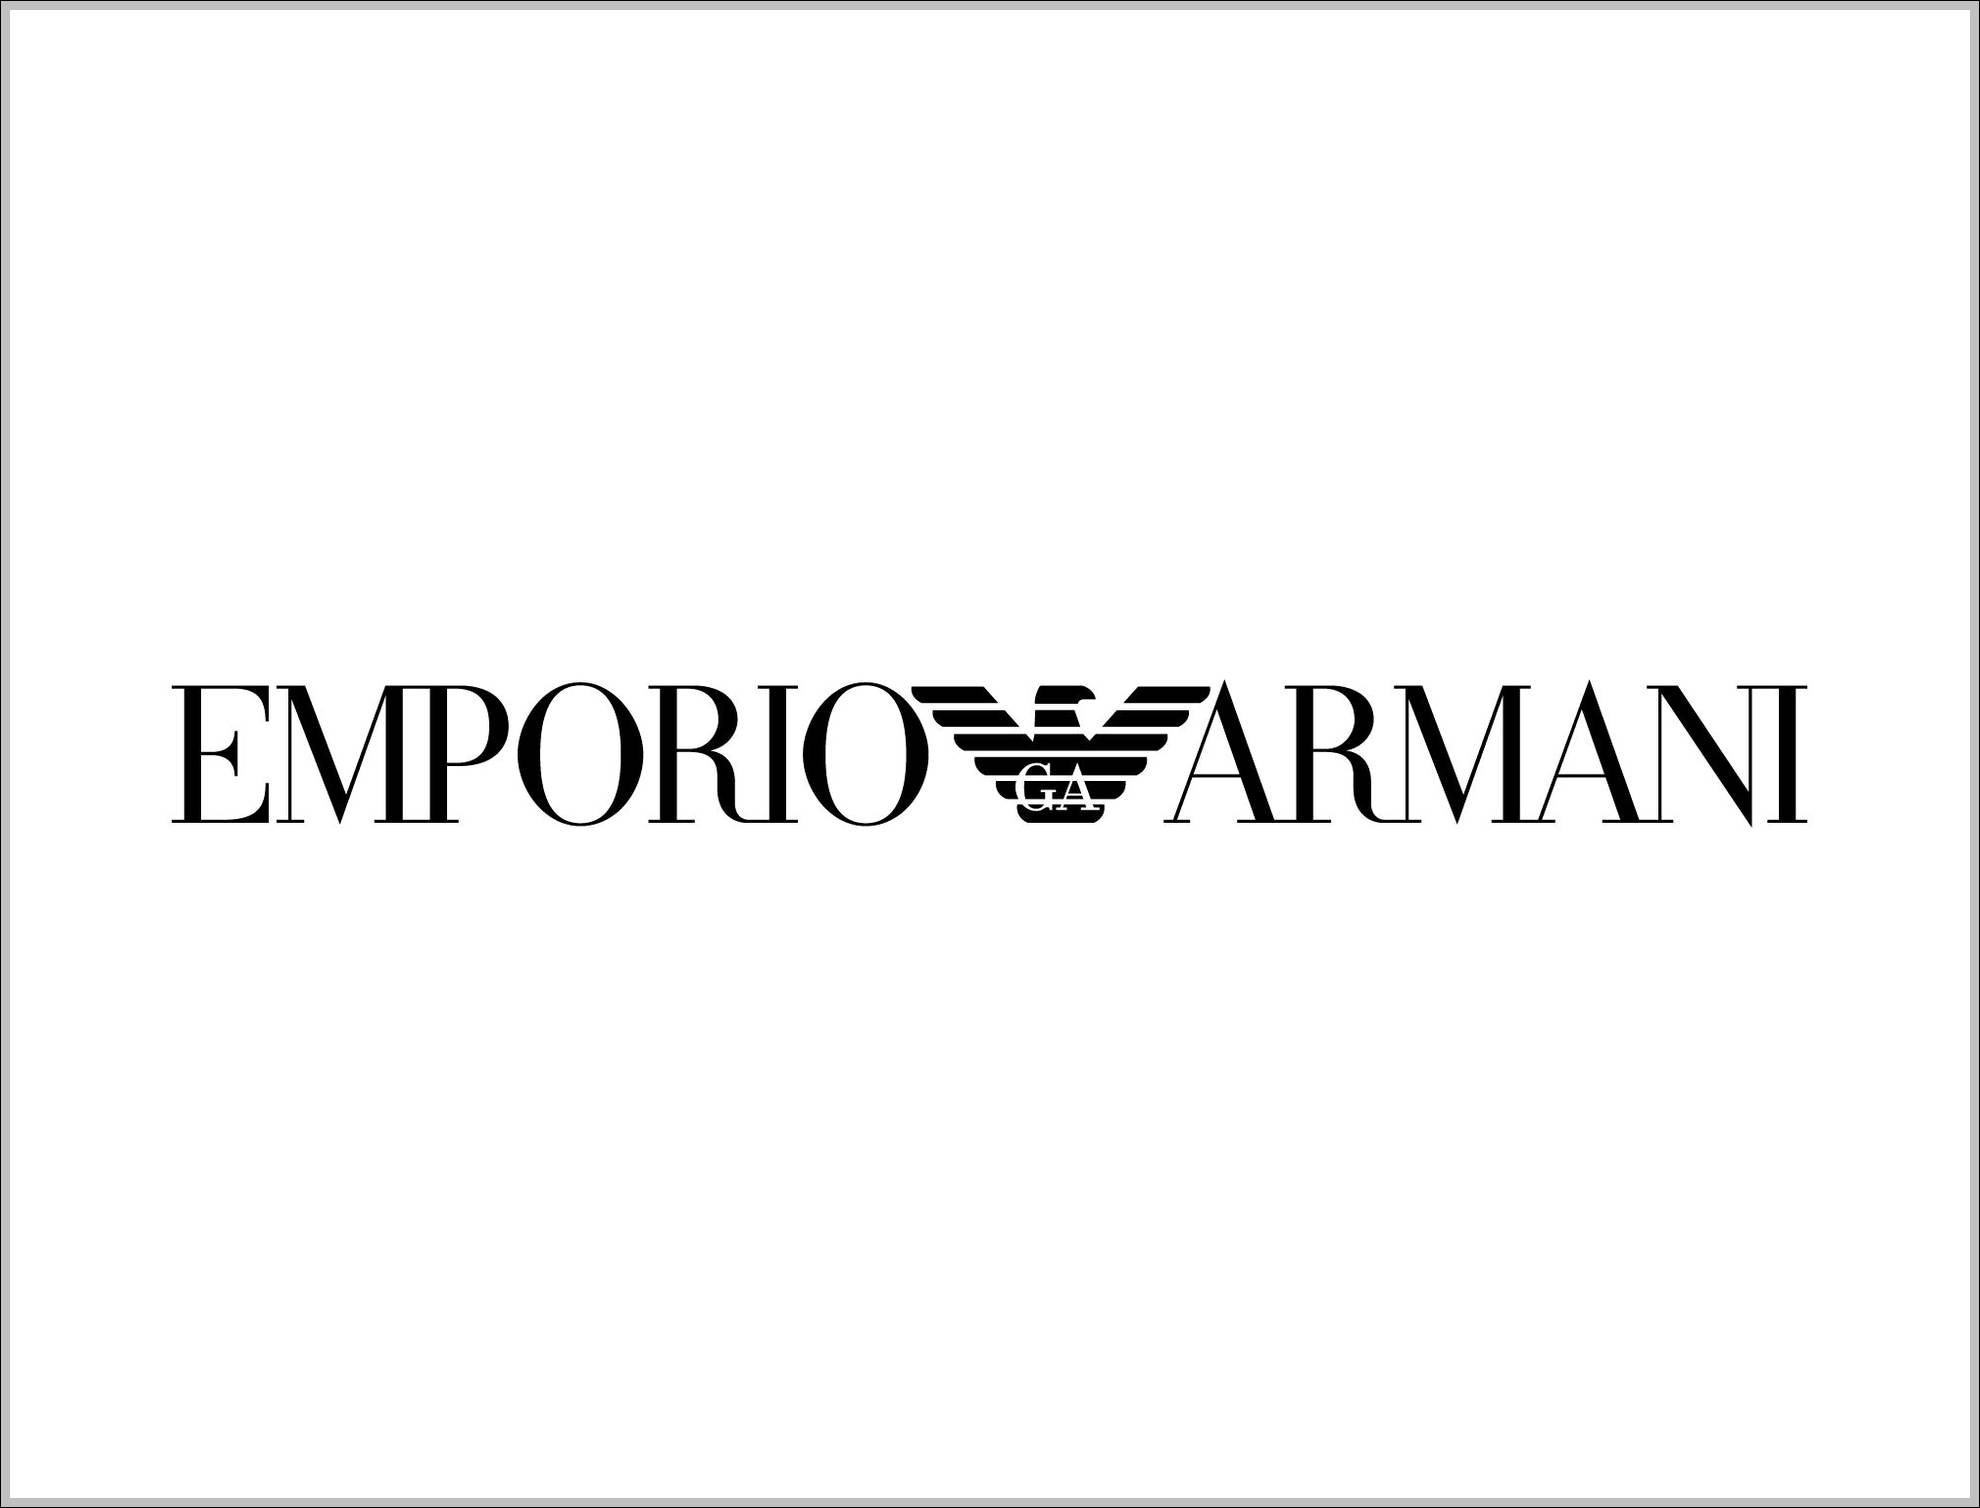 Emporio Armani sign